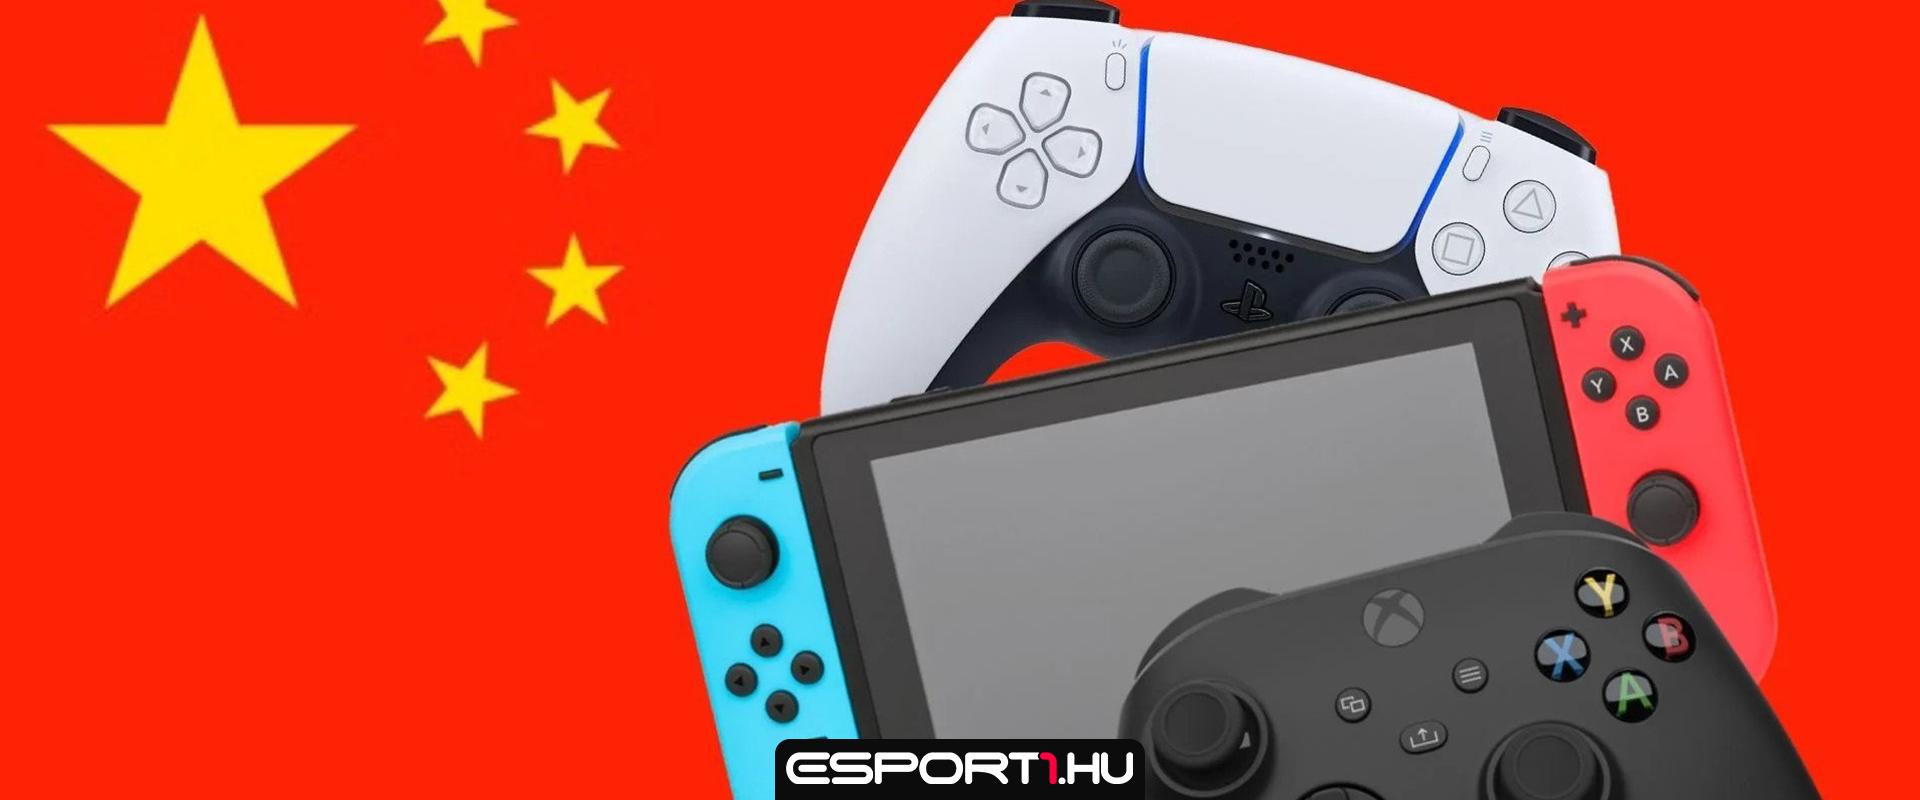 Hosszú idő után engedélyezett ismét új videojátékot a kínai kormány